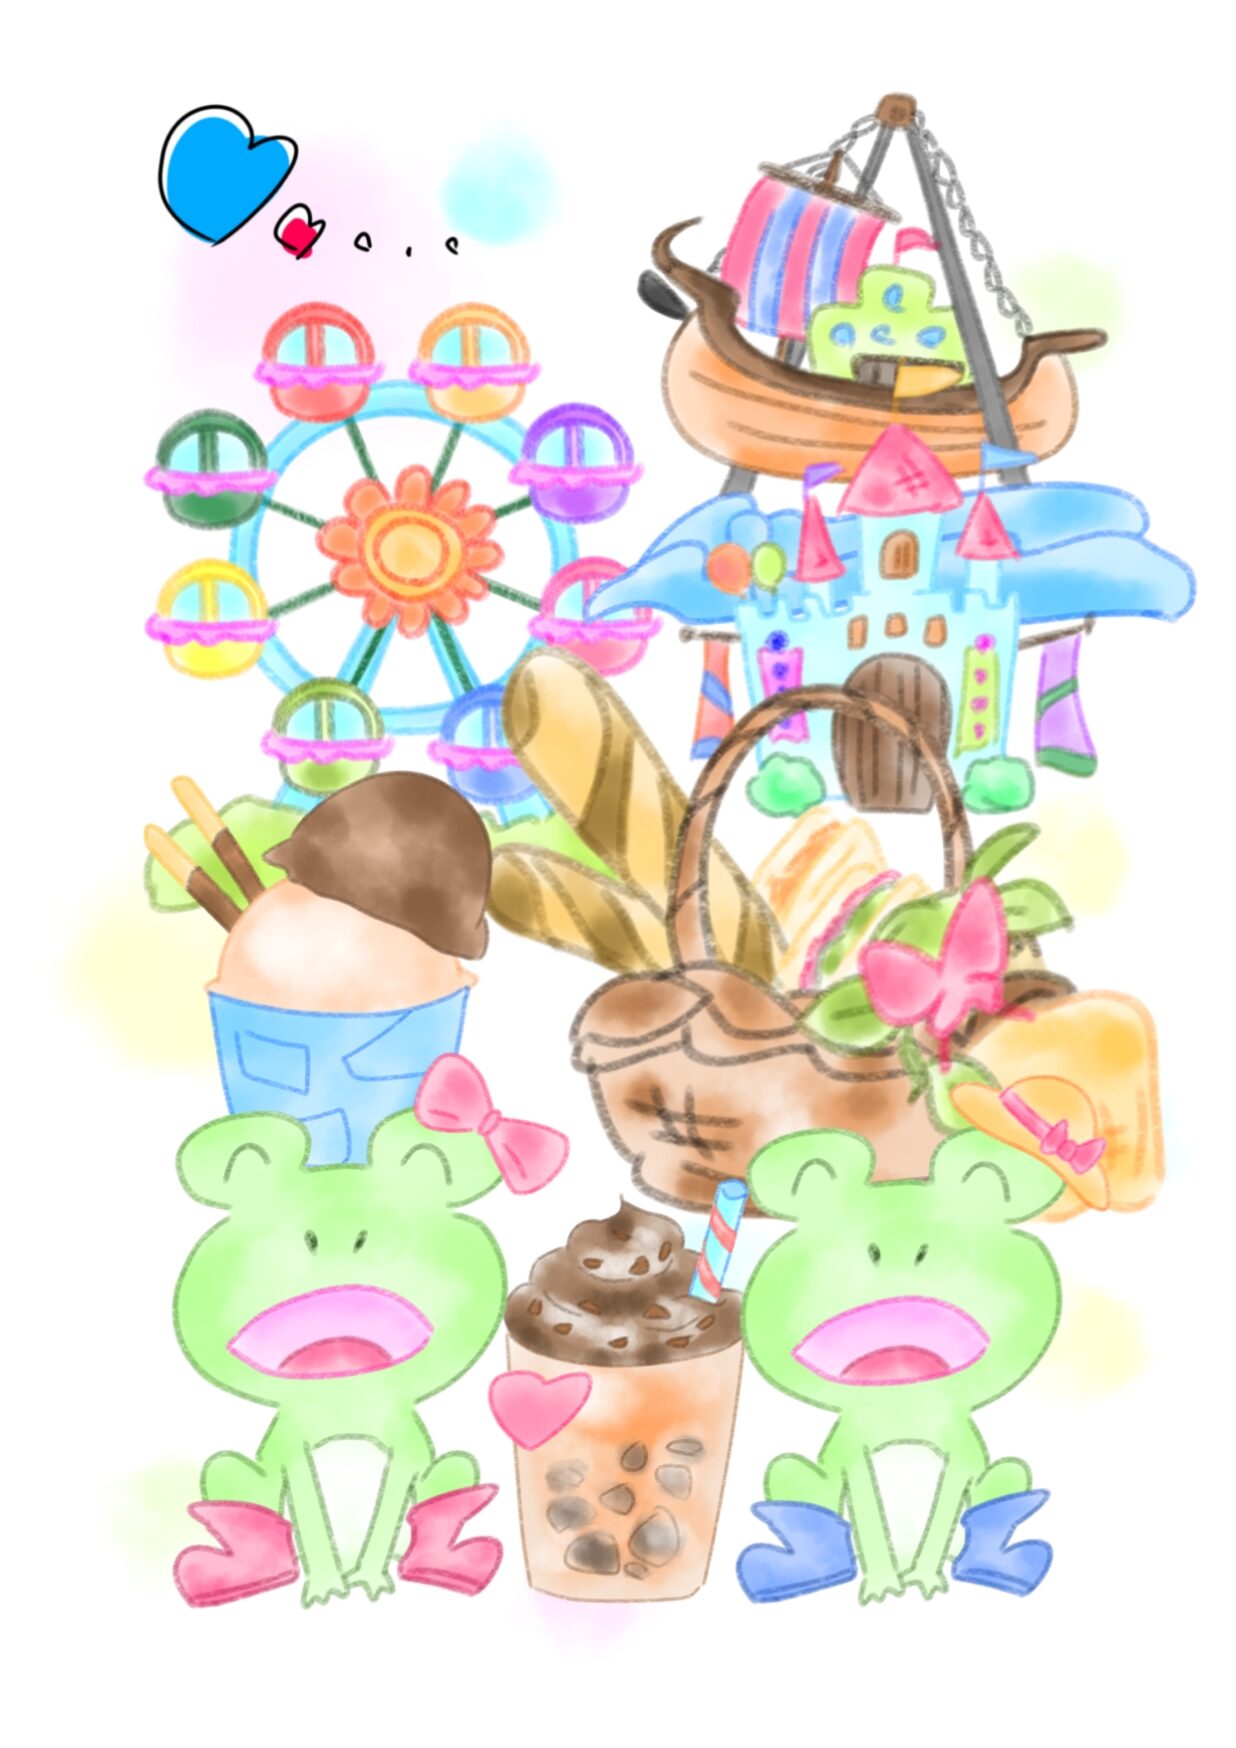 蛙もアイスクリームを食べて楽しむテーマパーク